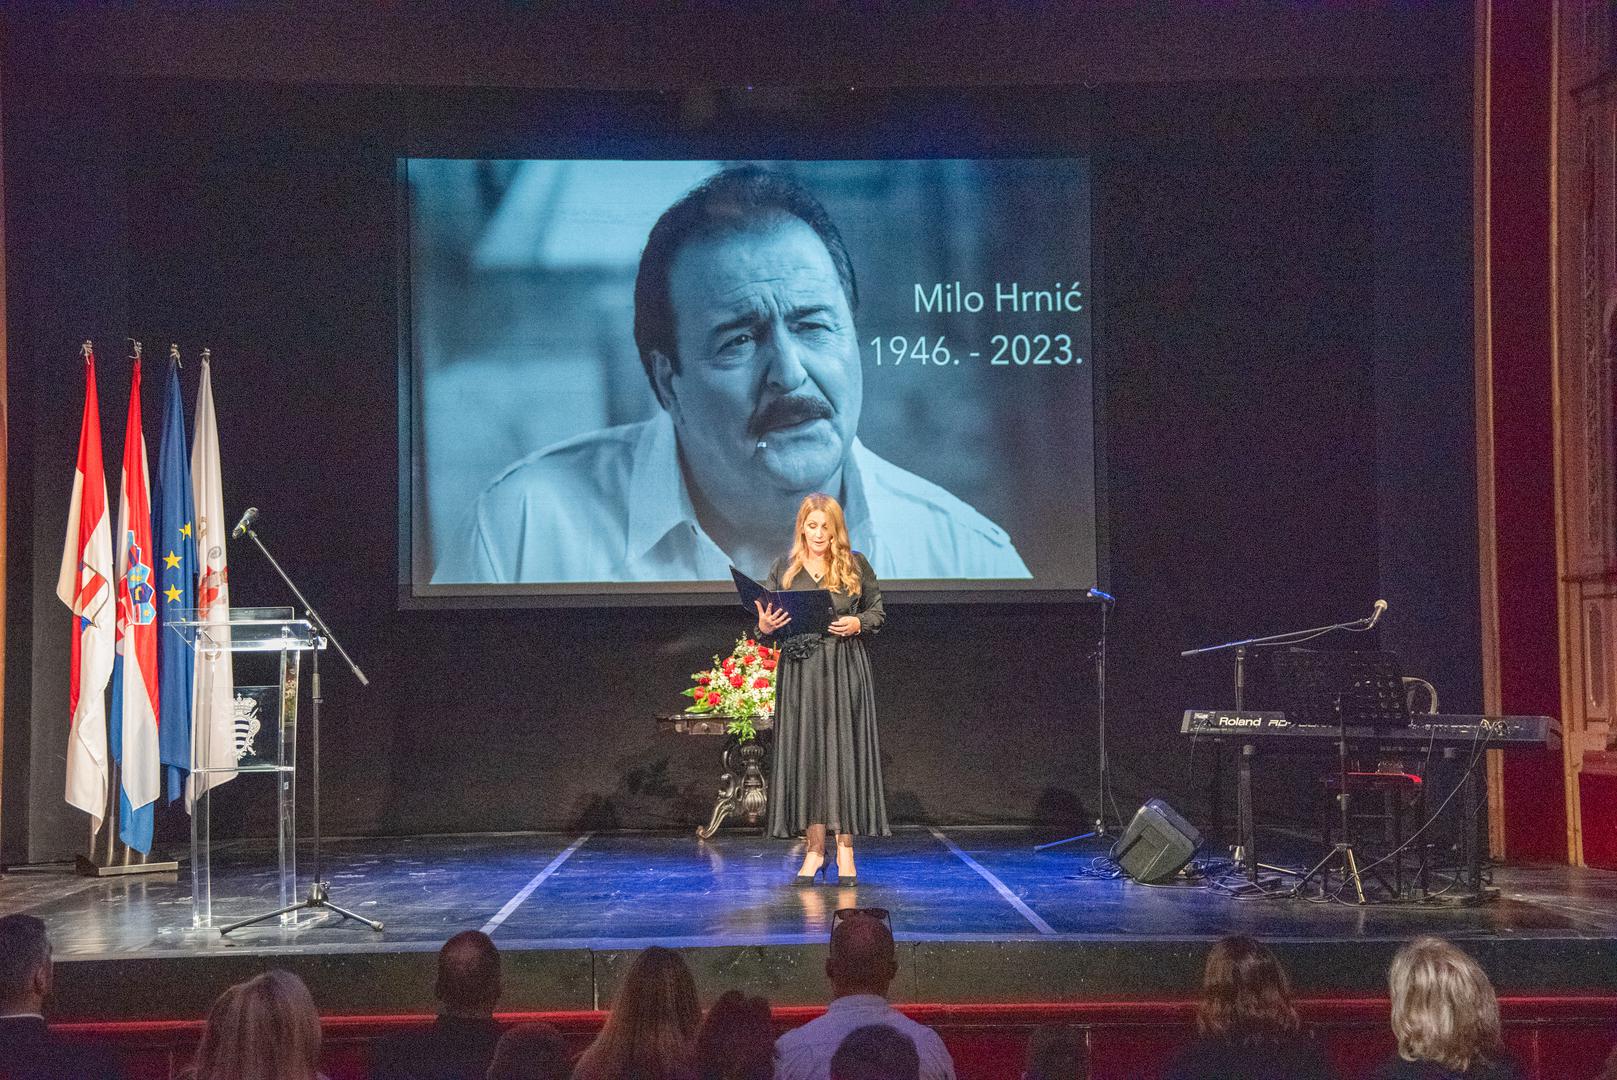 Milo je preminuo u jednoj dubrovačkoj bolnici u 74. godini života u rujnu ove godine. Sprovod za pjevača održan je prije tjedan dana.